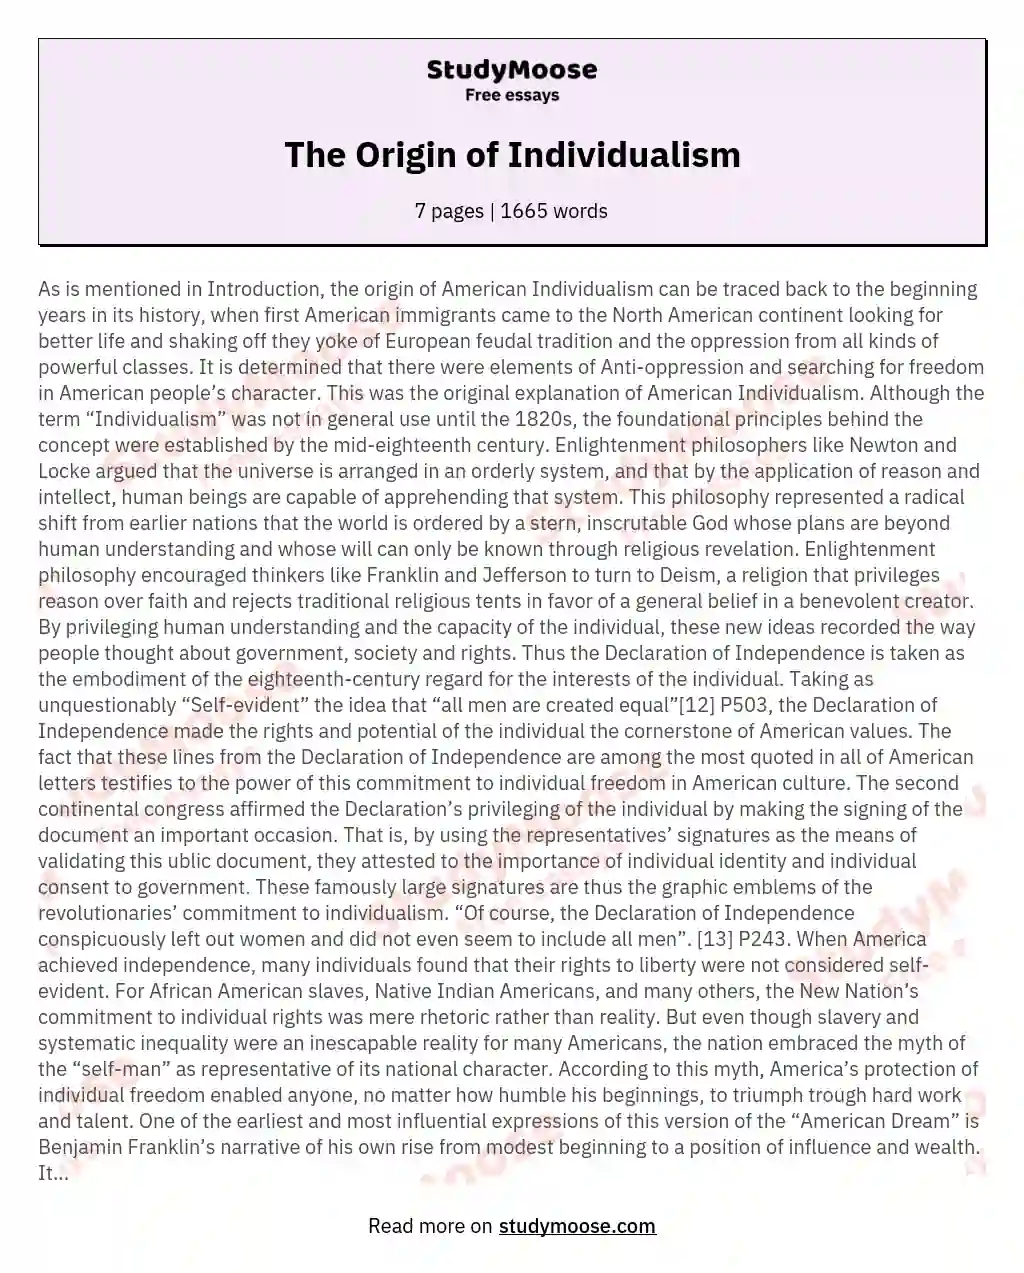 The Origin of Individualism essay